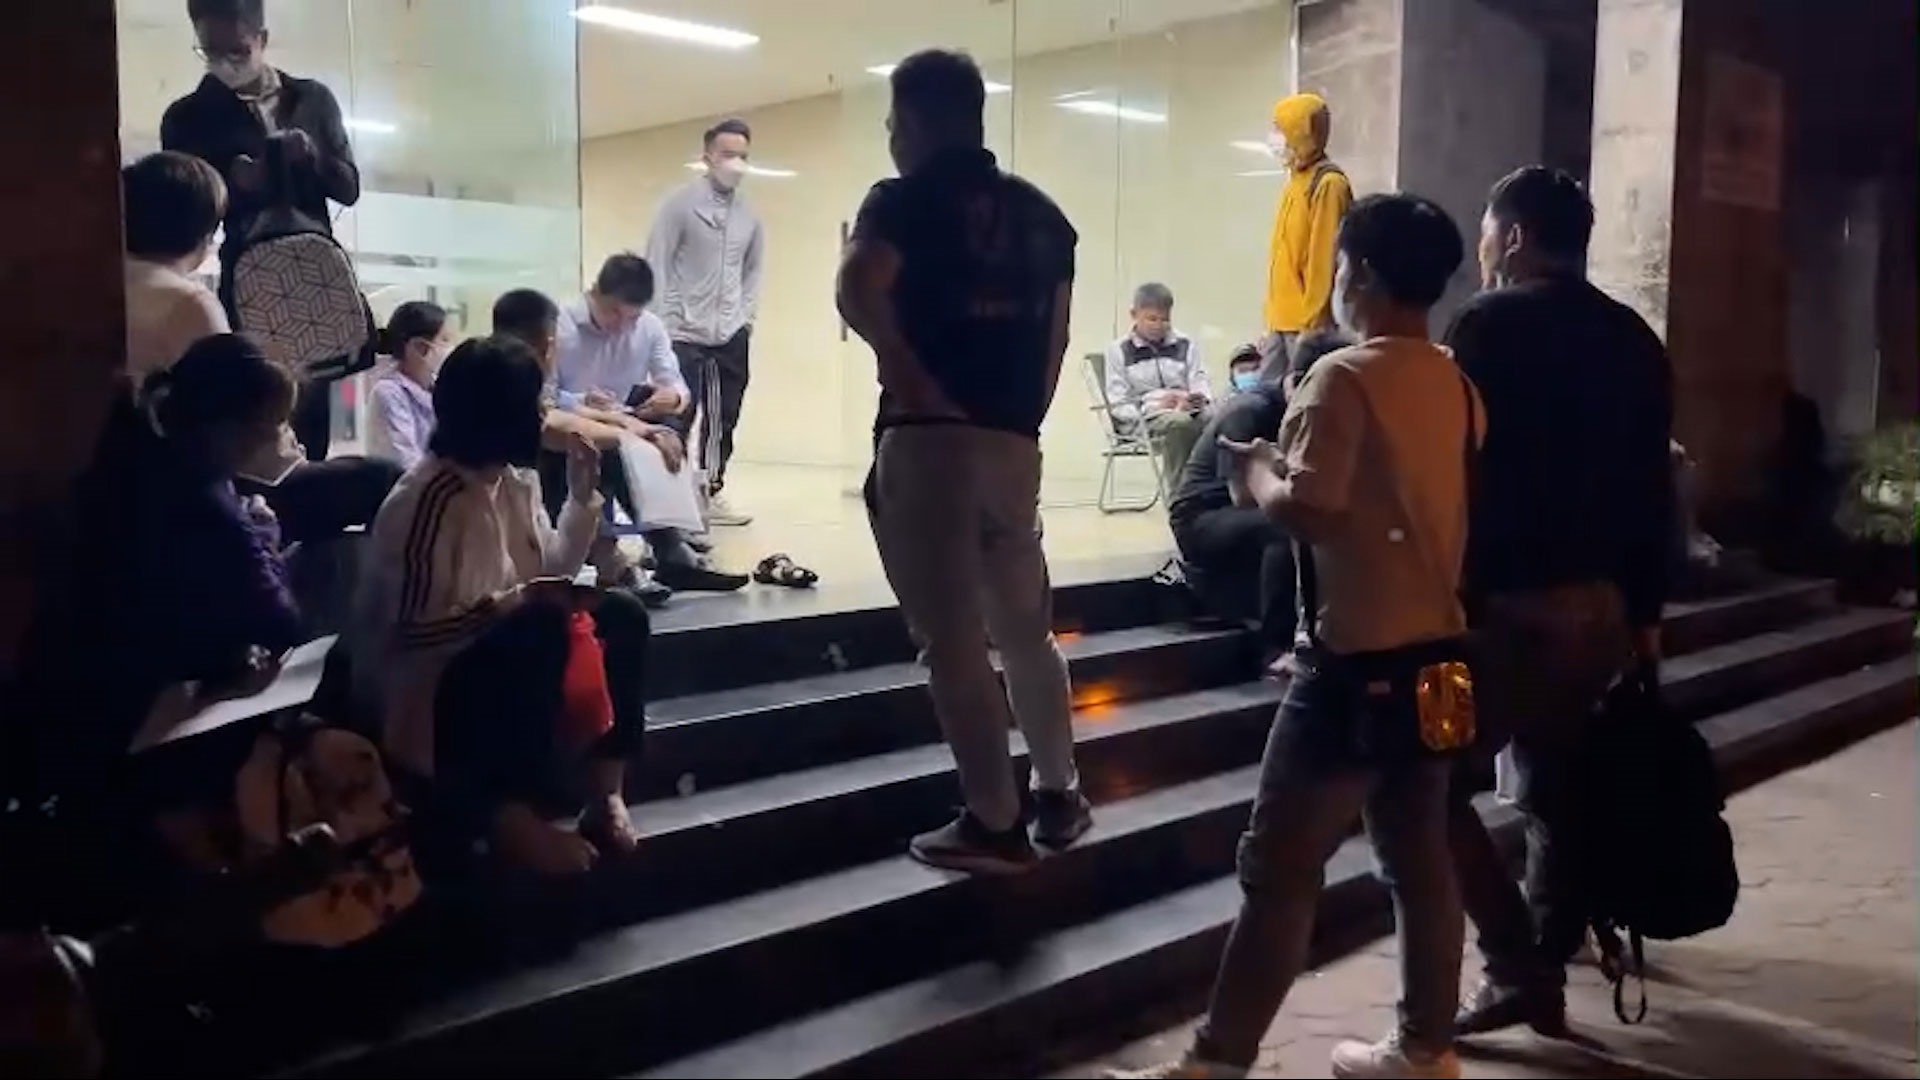 Cảnh người dân xếp hàng từ 3 giờ sáng mua hồ sơ nhà ở xã hội tại trụ sở Công ty CP Đầu tư Xây dựng NHS trên đường Thành Thái (Dịch Vọng, Cầu Giấy, Hà Nội).